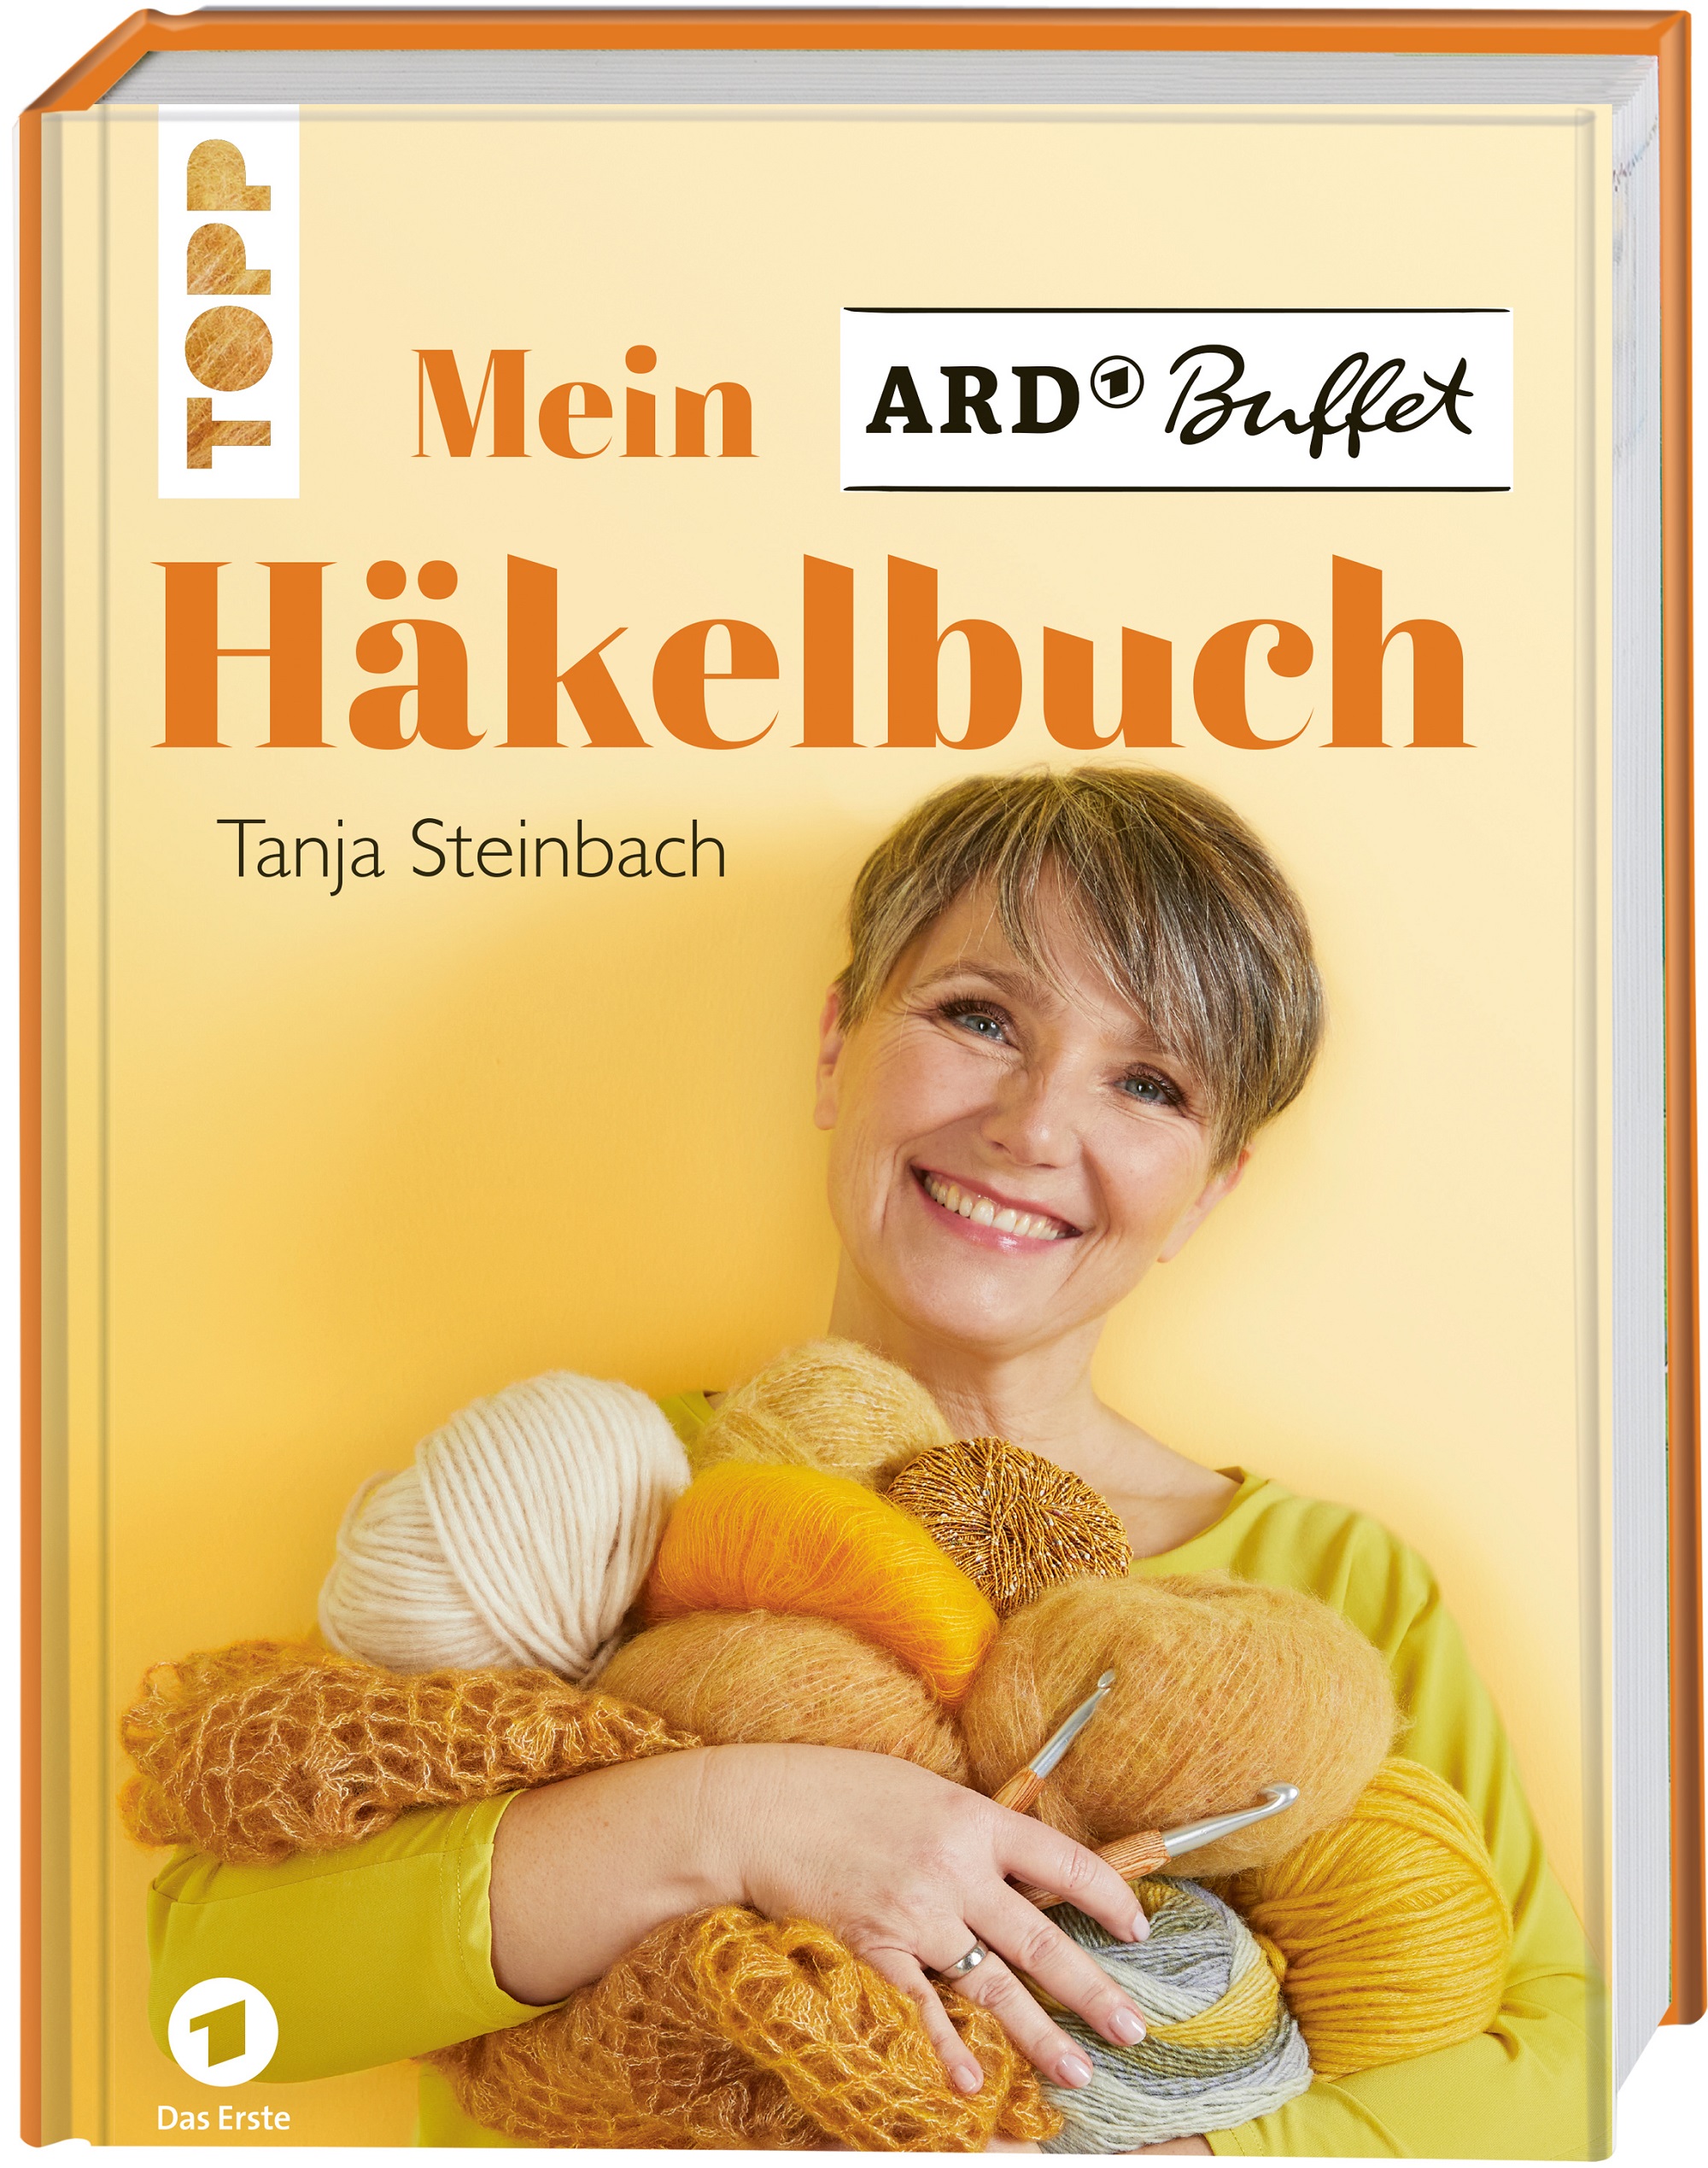 Tanja Steinbach Häkelbuch